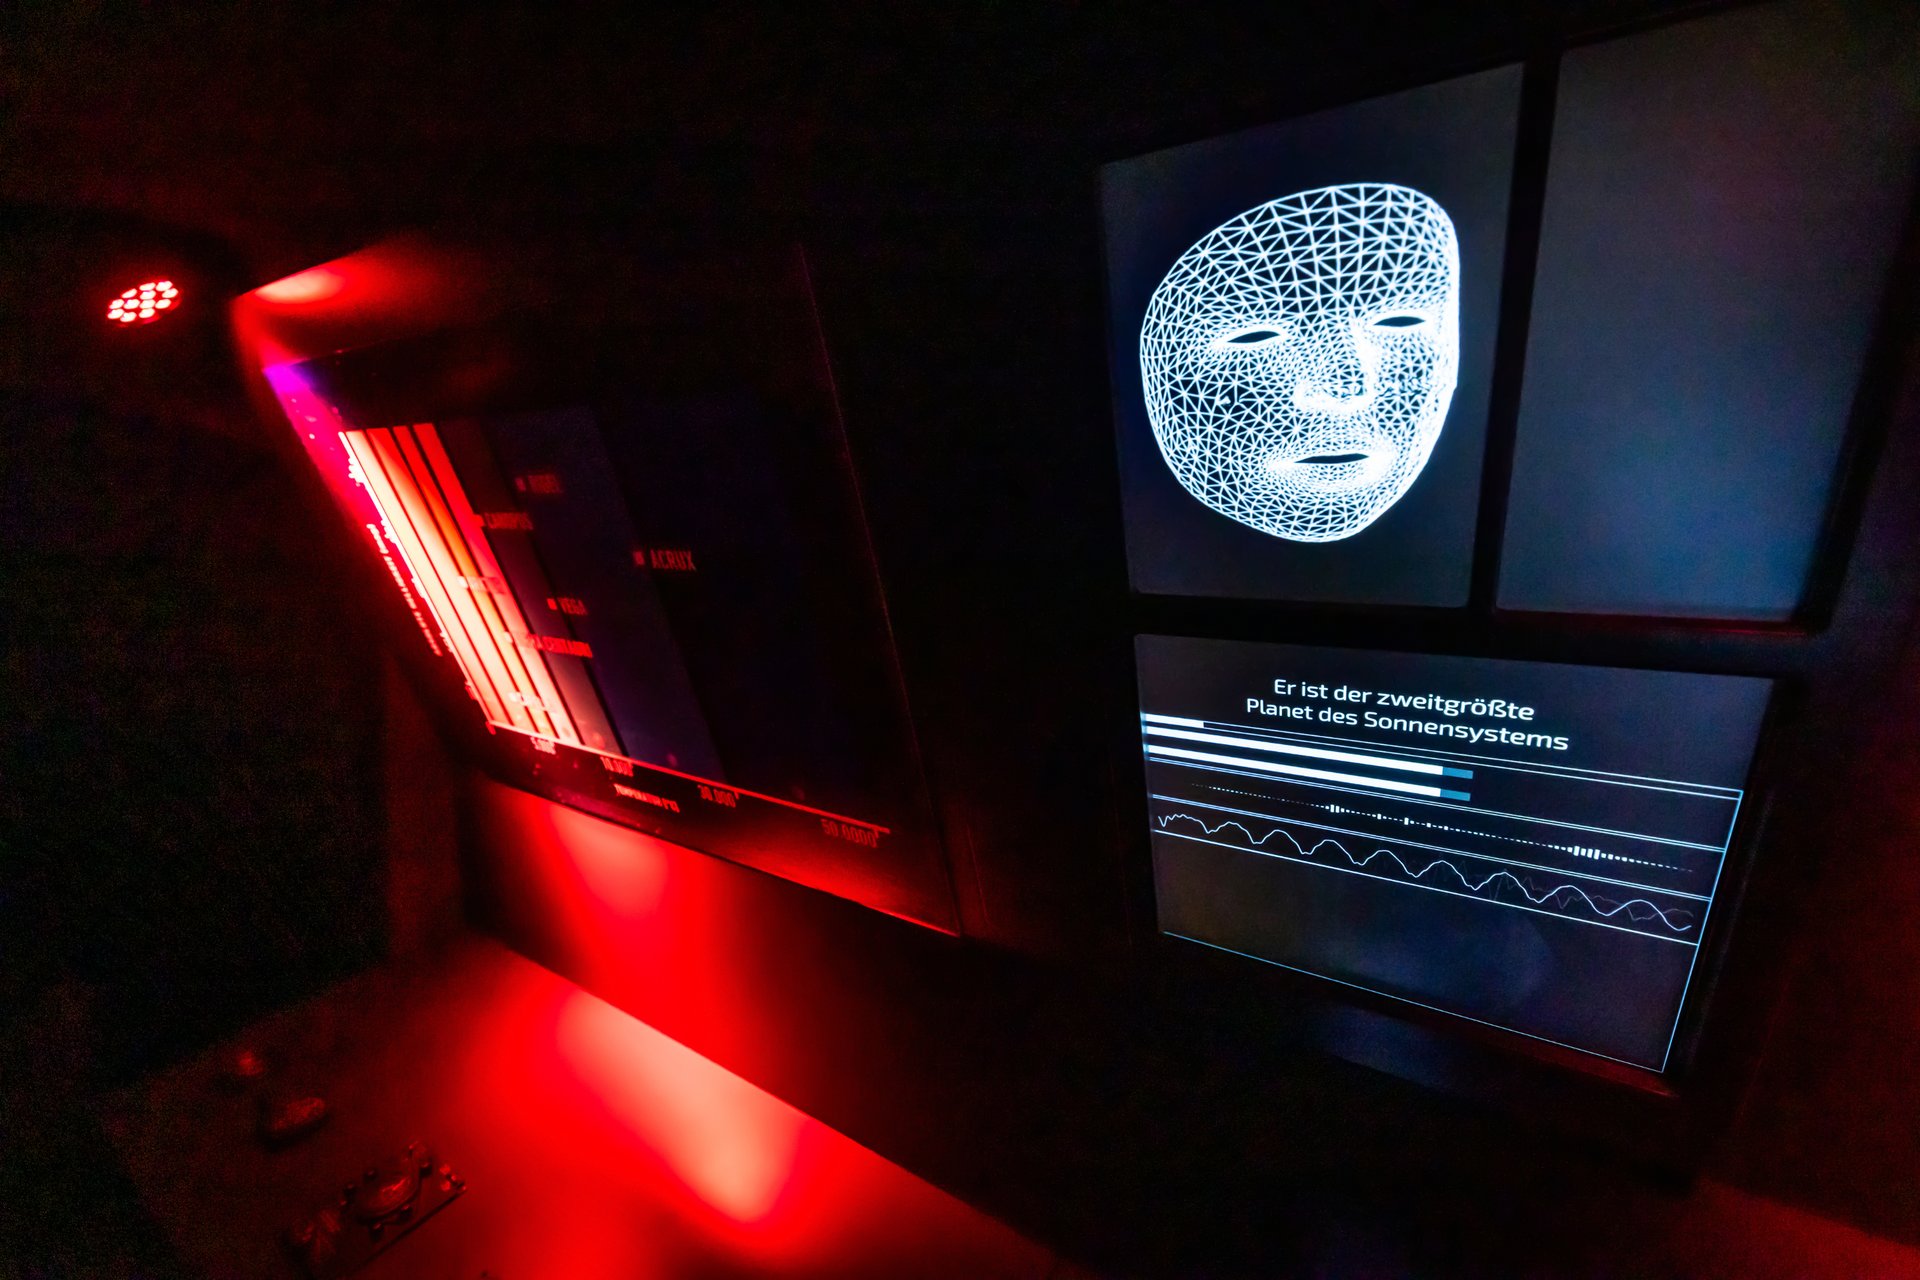 Ein Display zeigt eine weiße Maske, der Raum ist dunkel und nur links rot beleuchtet.